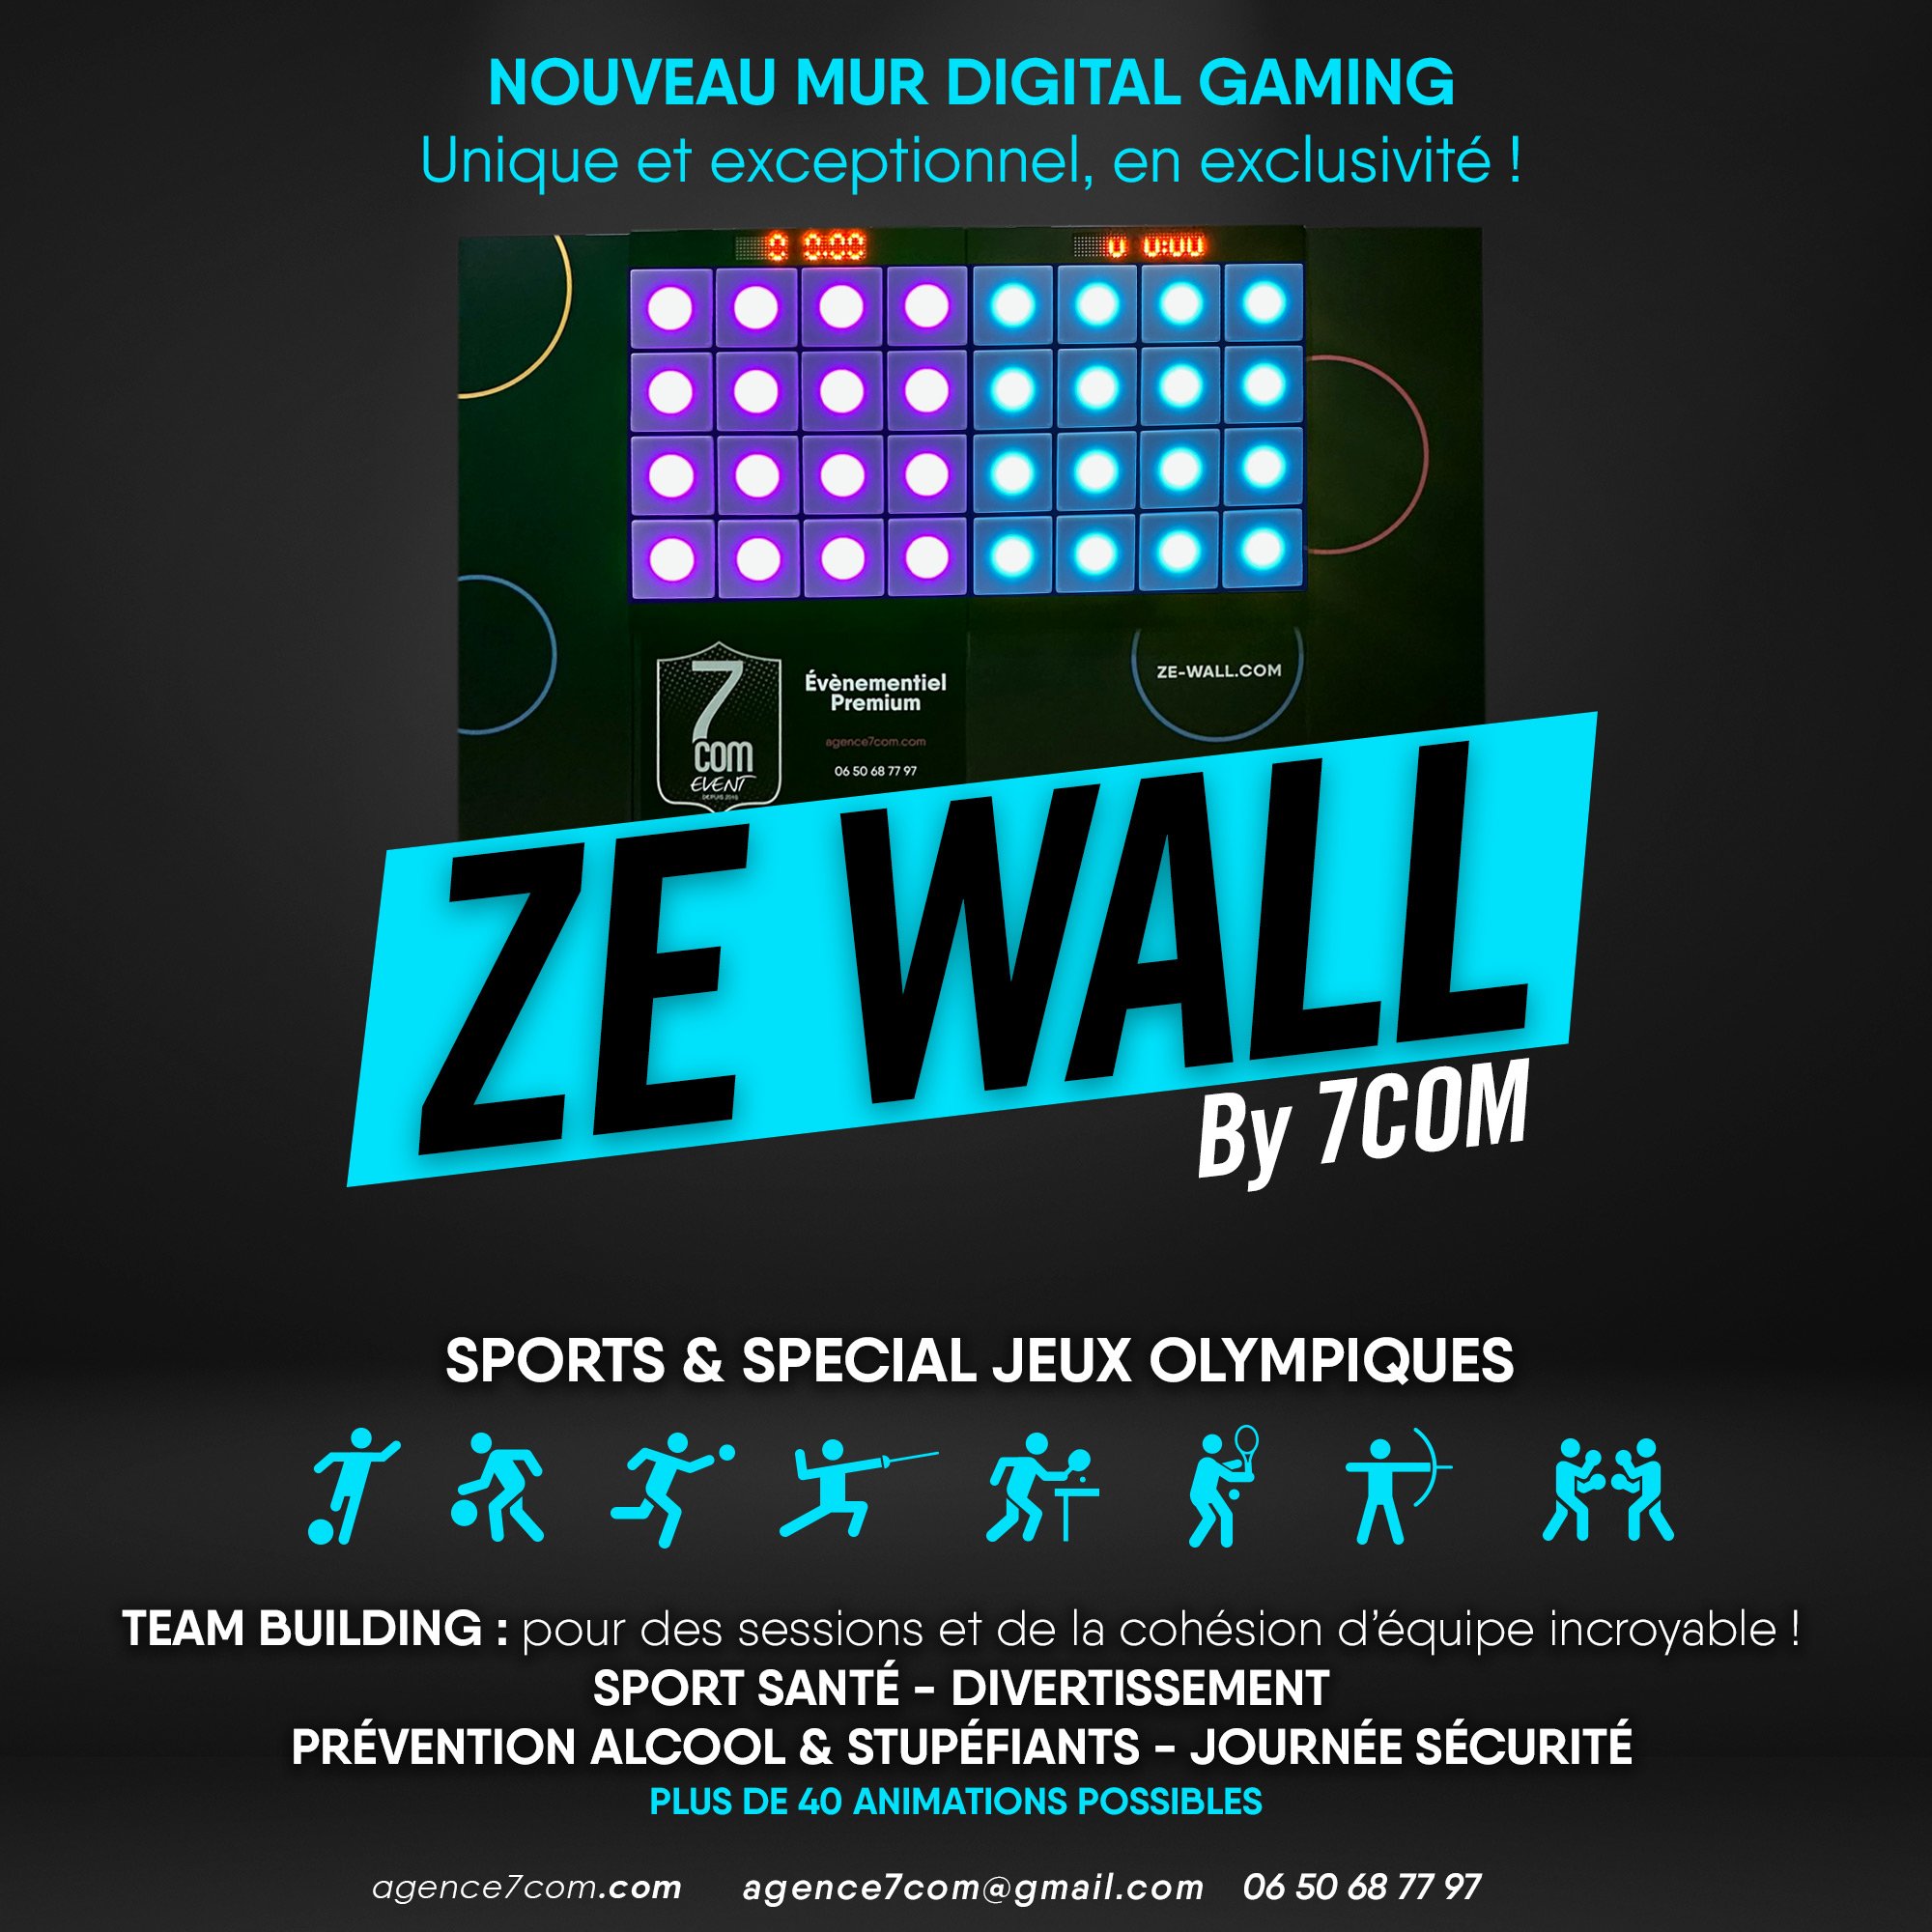 mur digital gaming — Actualités — Agence 7com